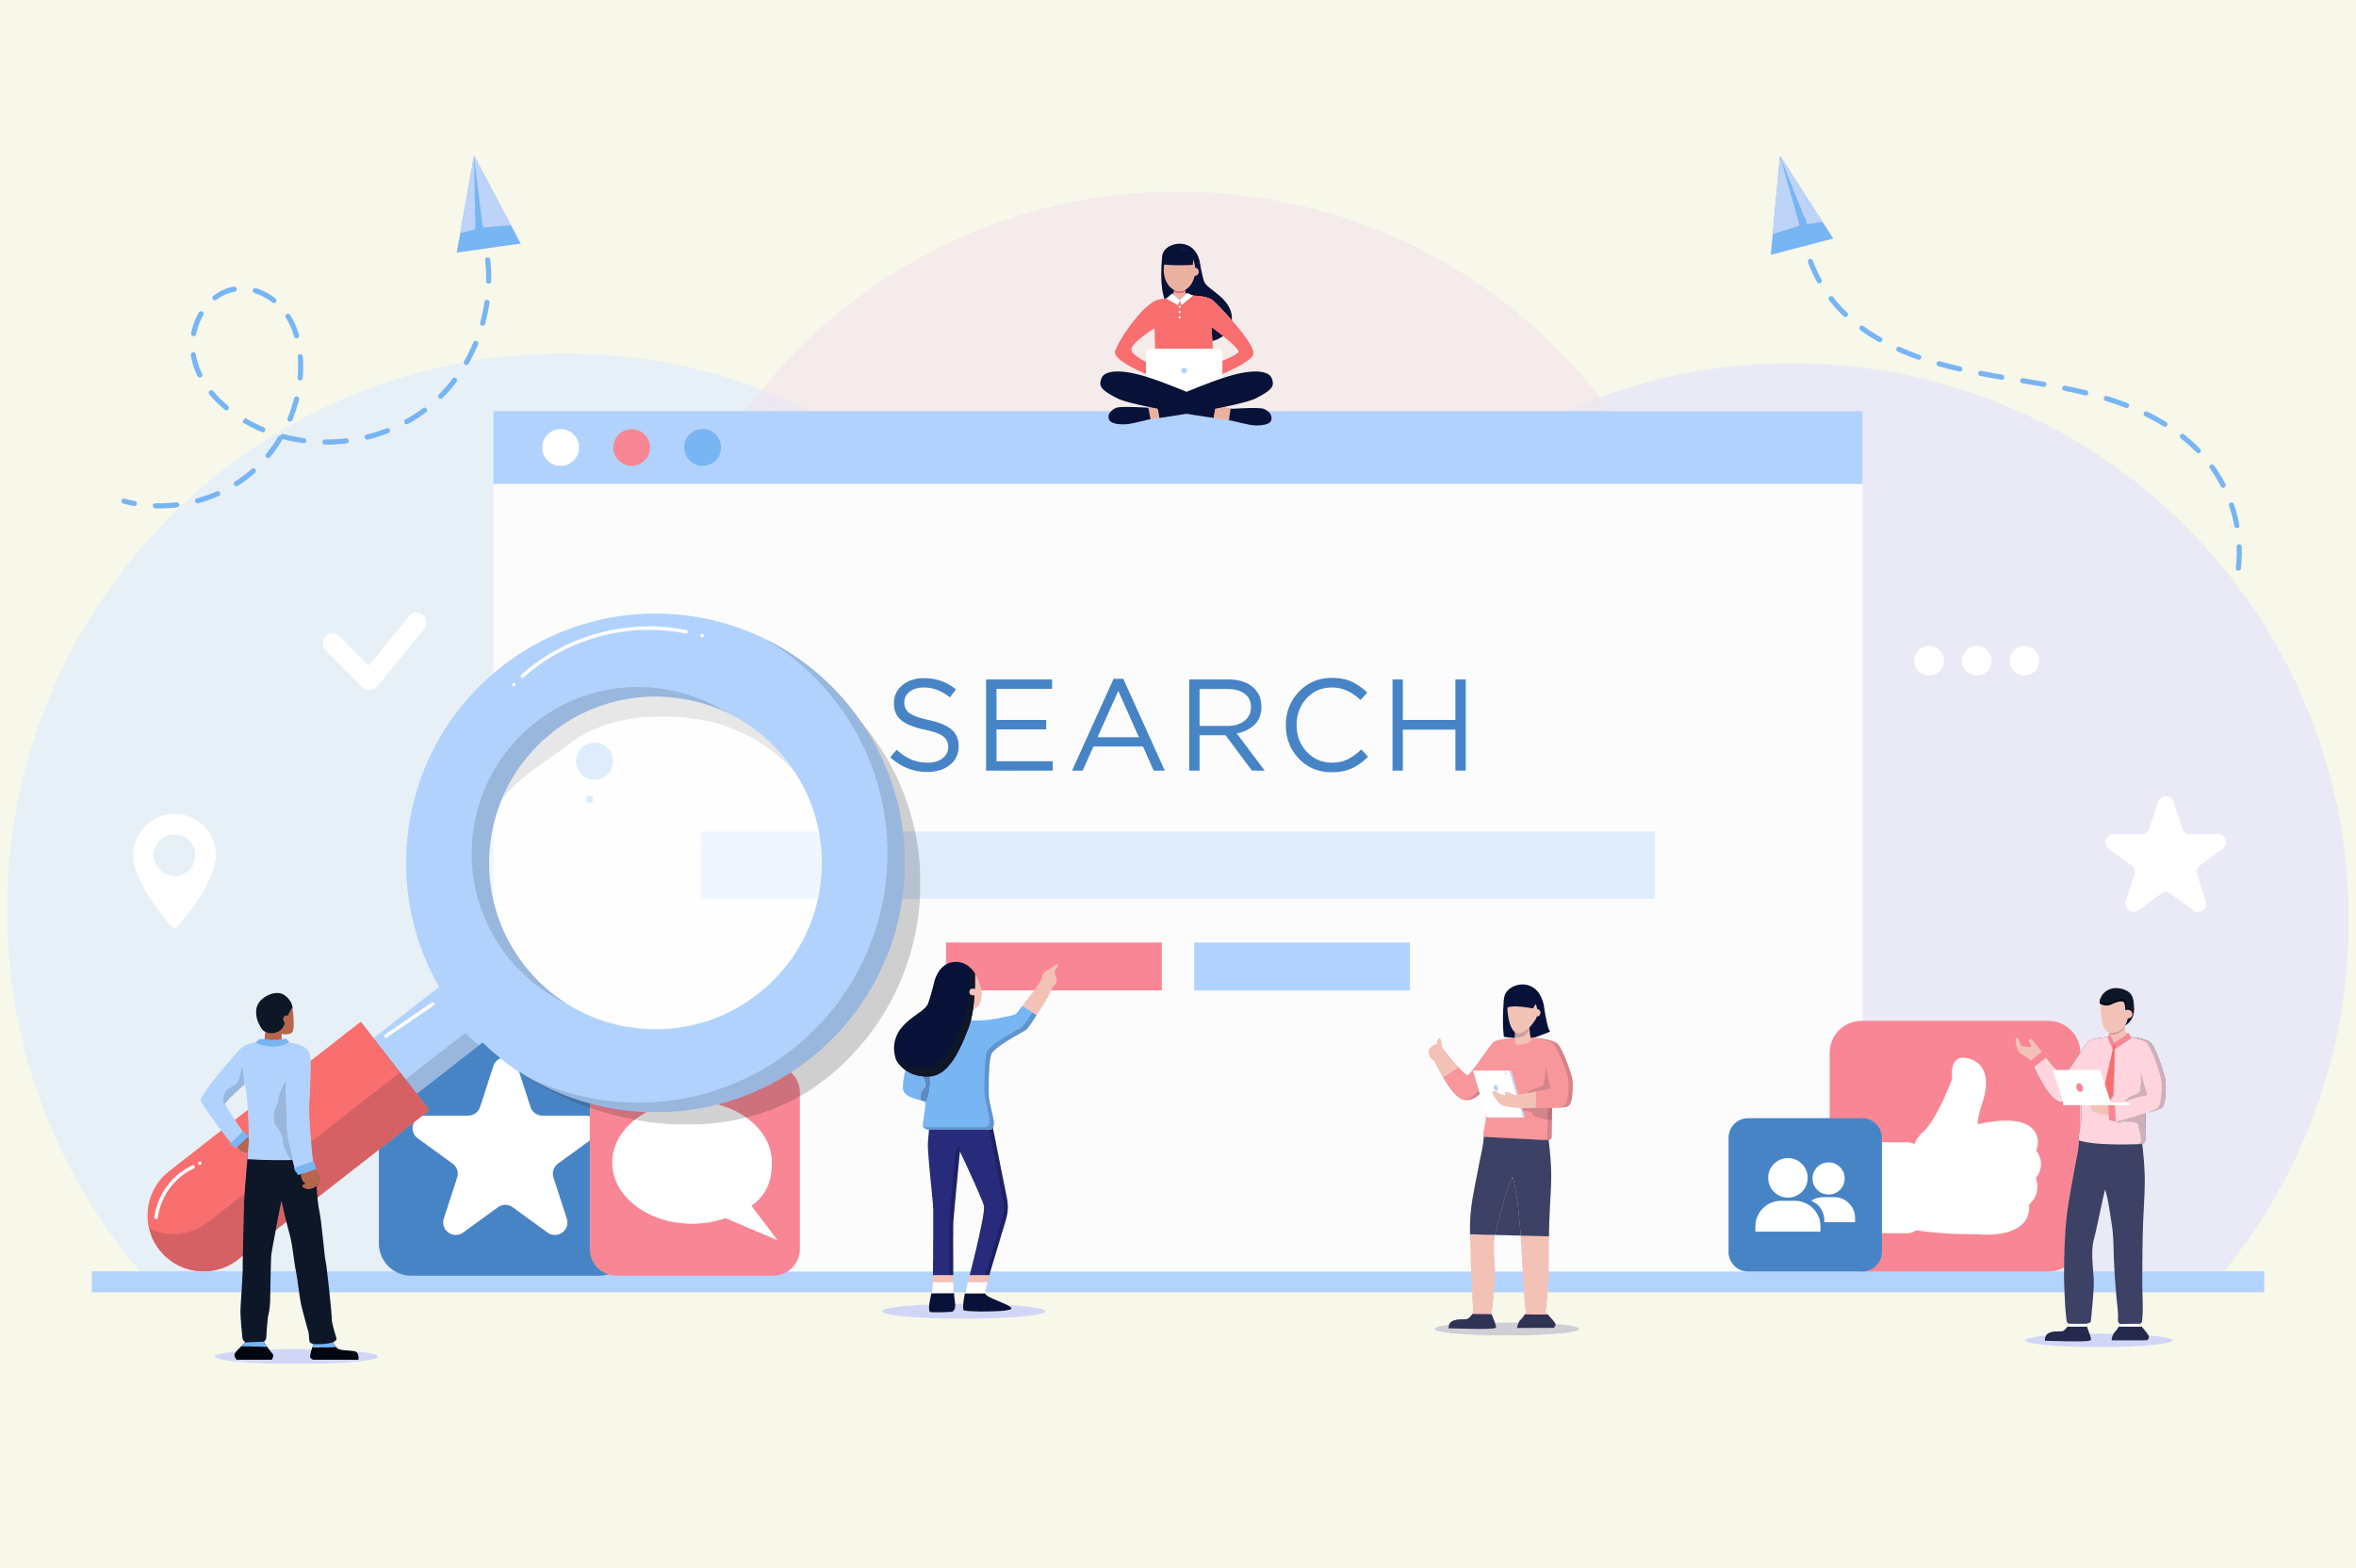 Internet searching is. Поиск информации иллюстрация. Поисковый запрос illustration. Поиск инфо картинка. Концепт поисковой системы.